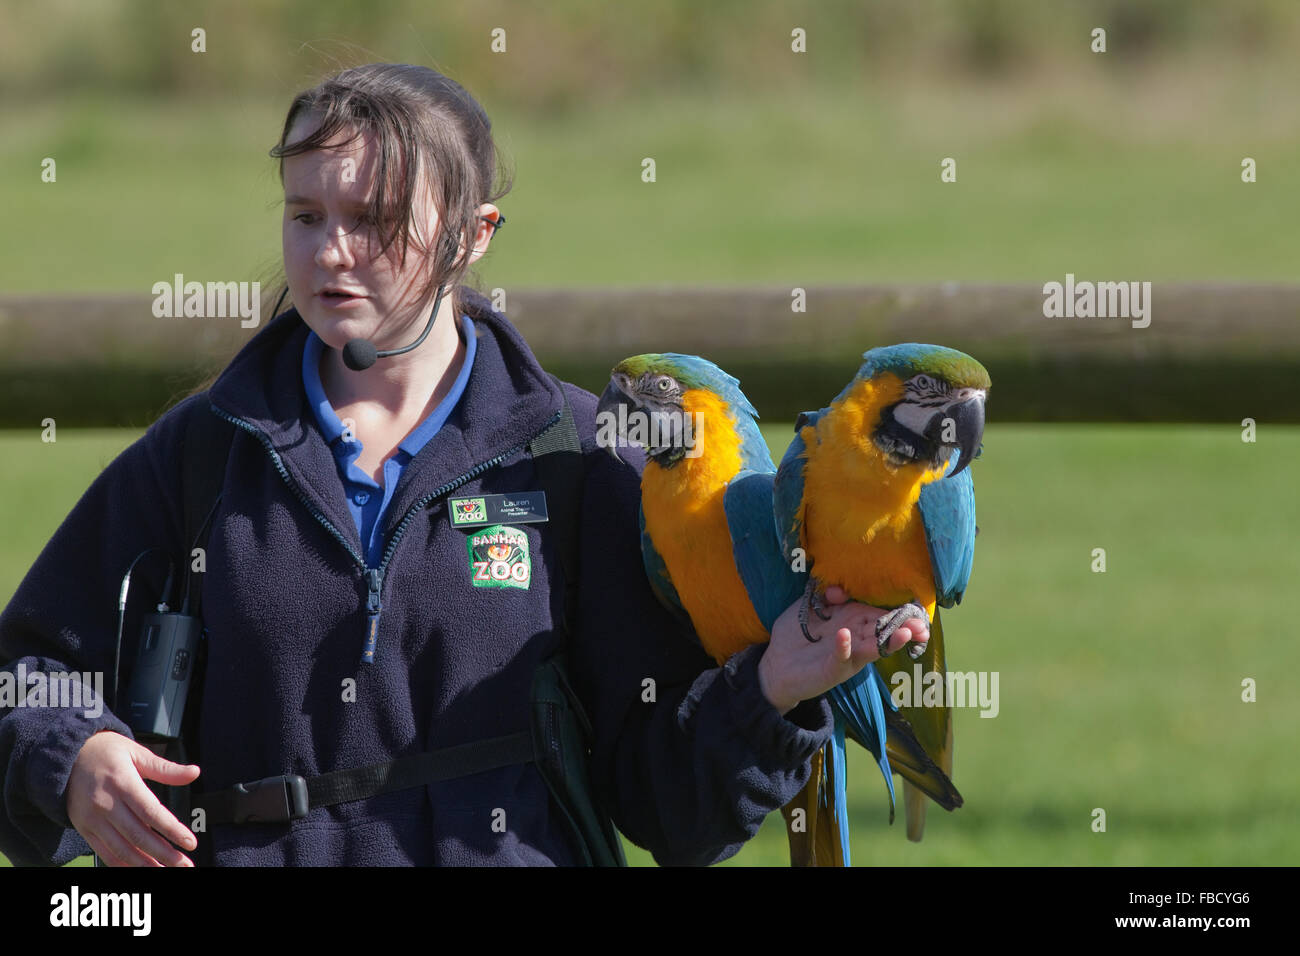 Aras bleu et jaune (Ara ararauna), perché sur le bras de l'entraîneur des animaux, le Zoo de Banham, Norfolk. Spectacle d'oiseaux de la scène. Banque D'Images